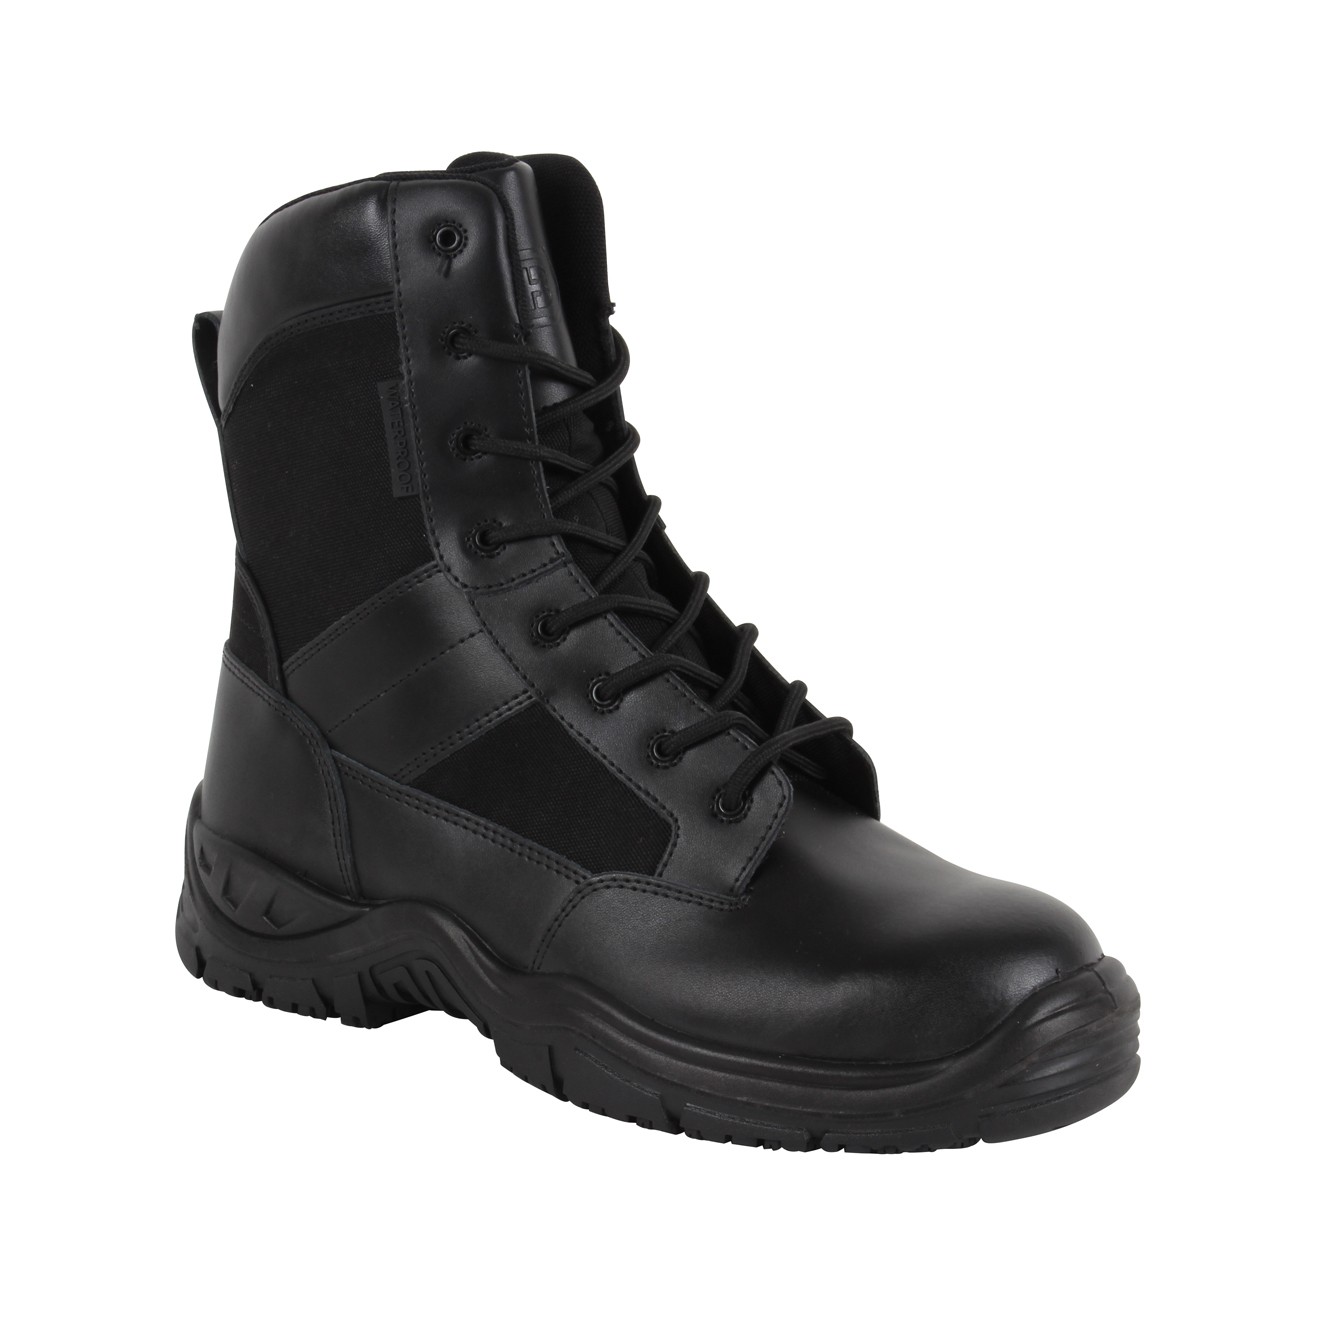 Tactical Commander Boot